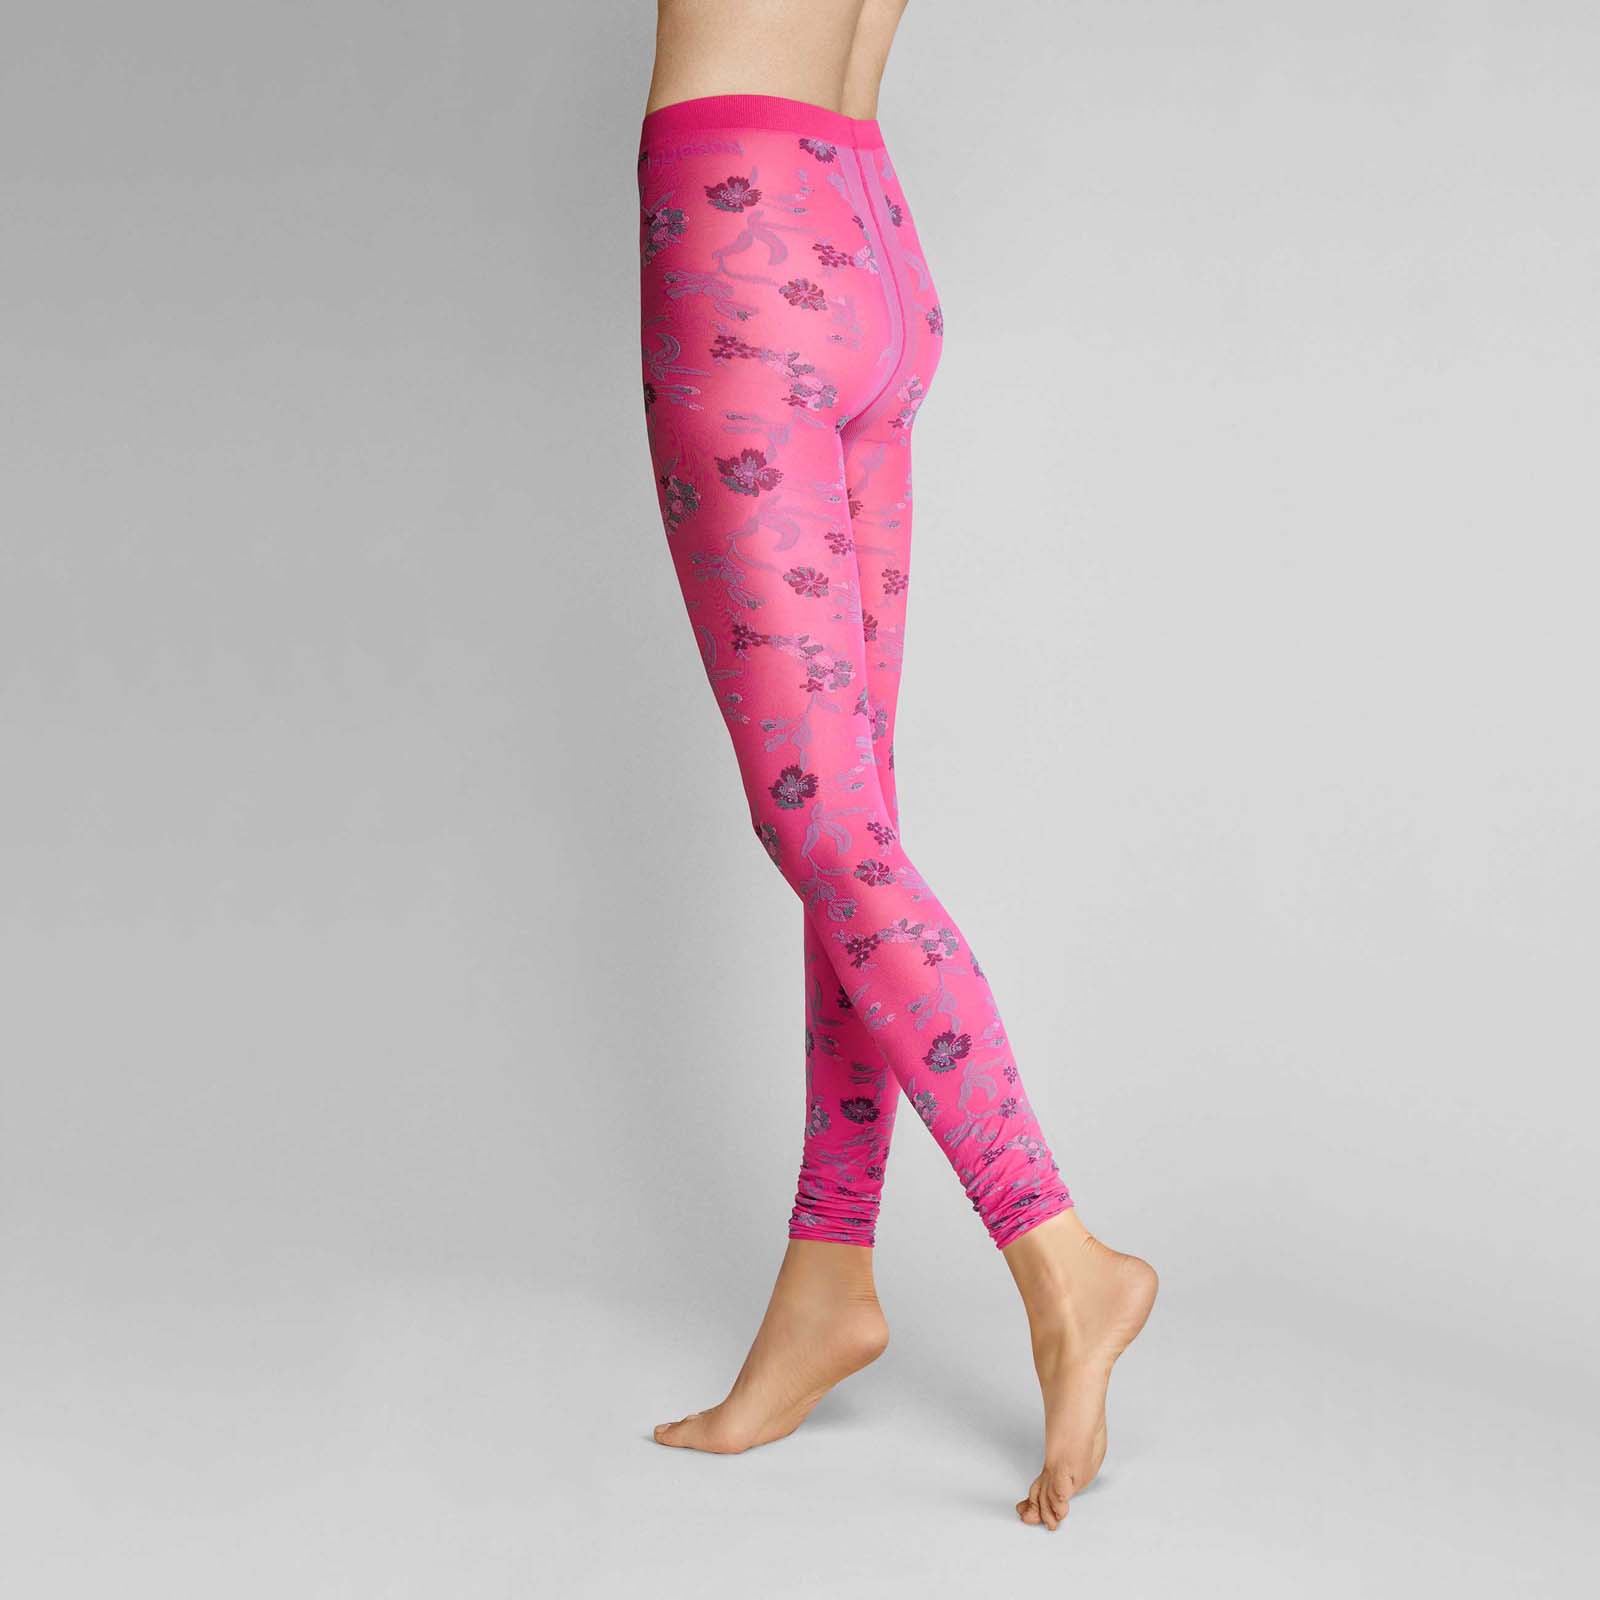 HUDSON Damen PEERLESS -  36/38 - Damen Leggings mit Blumen Elementen allover  - Spicy (Pink/Violett)